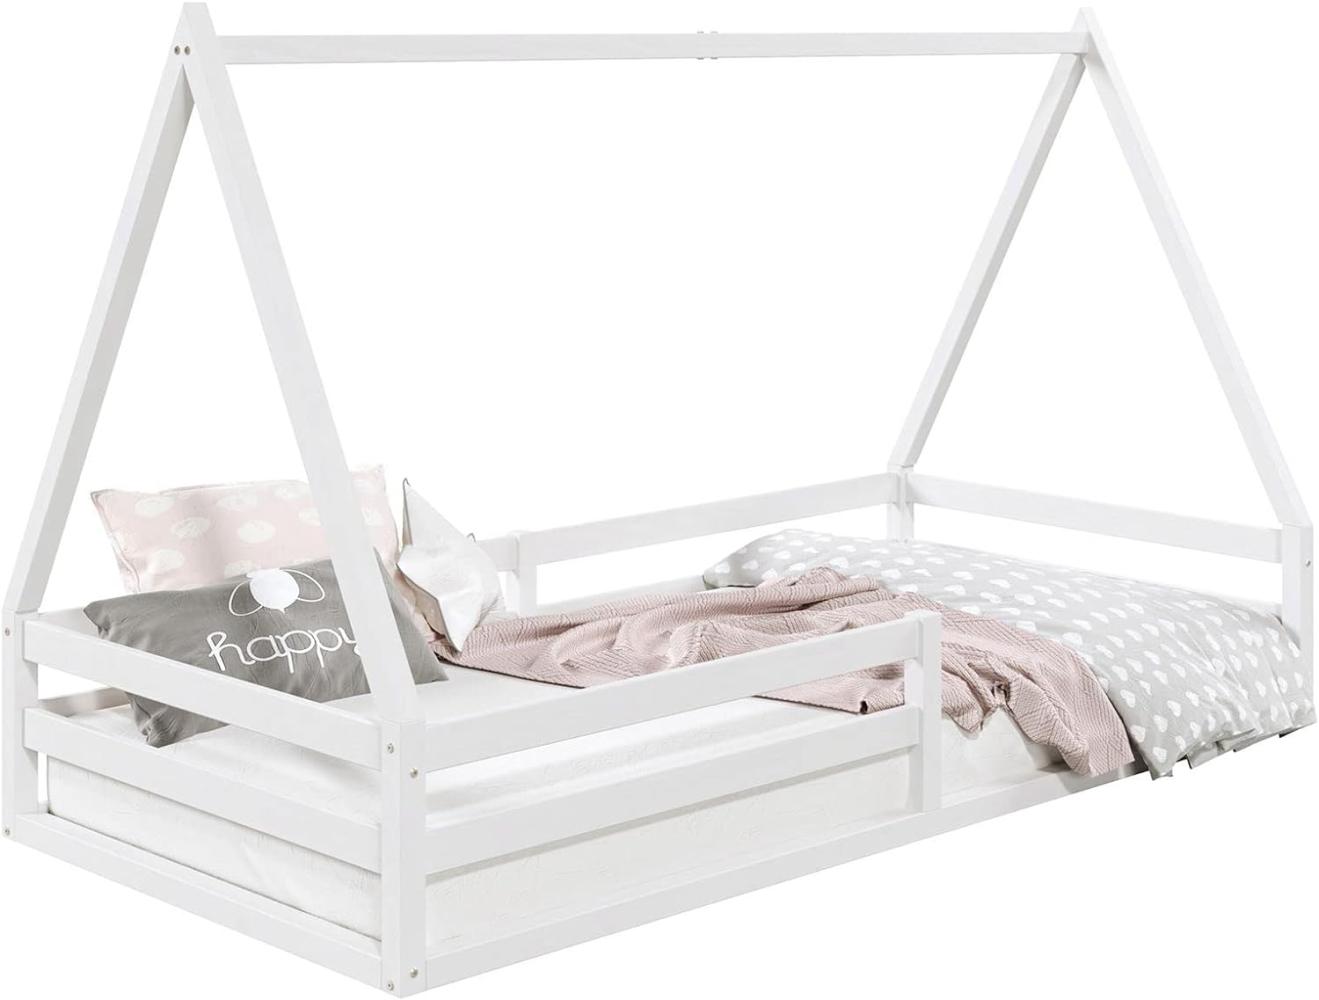 IDIMEX Hausbett SILA aus massiver Kiefer, schönes Montessori Bett in 90 x 200 cm, stabiles Kinderbett mit Rausfallschutz und Dach in weiß Bild 1